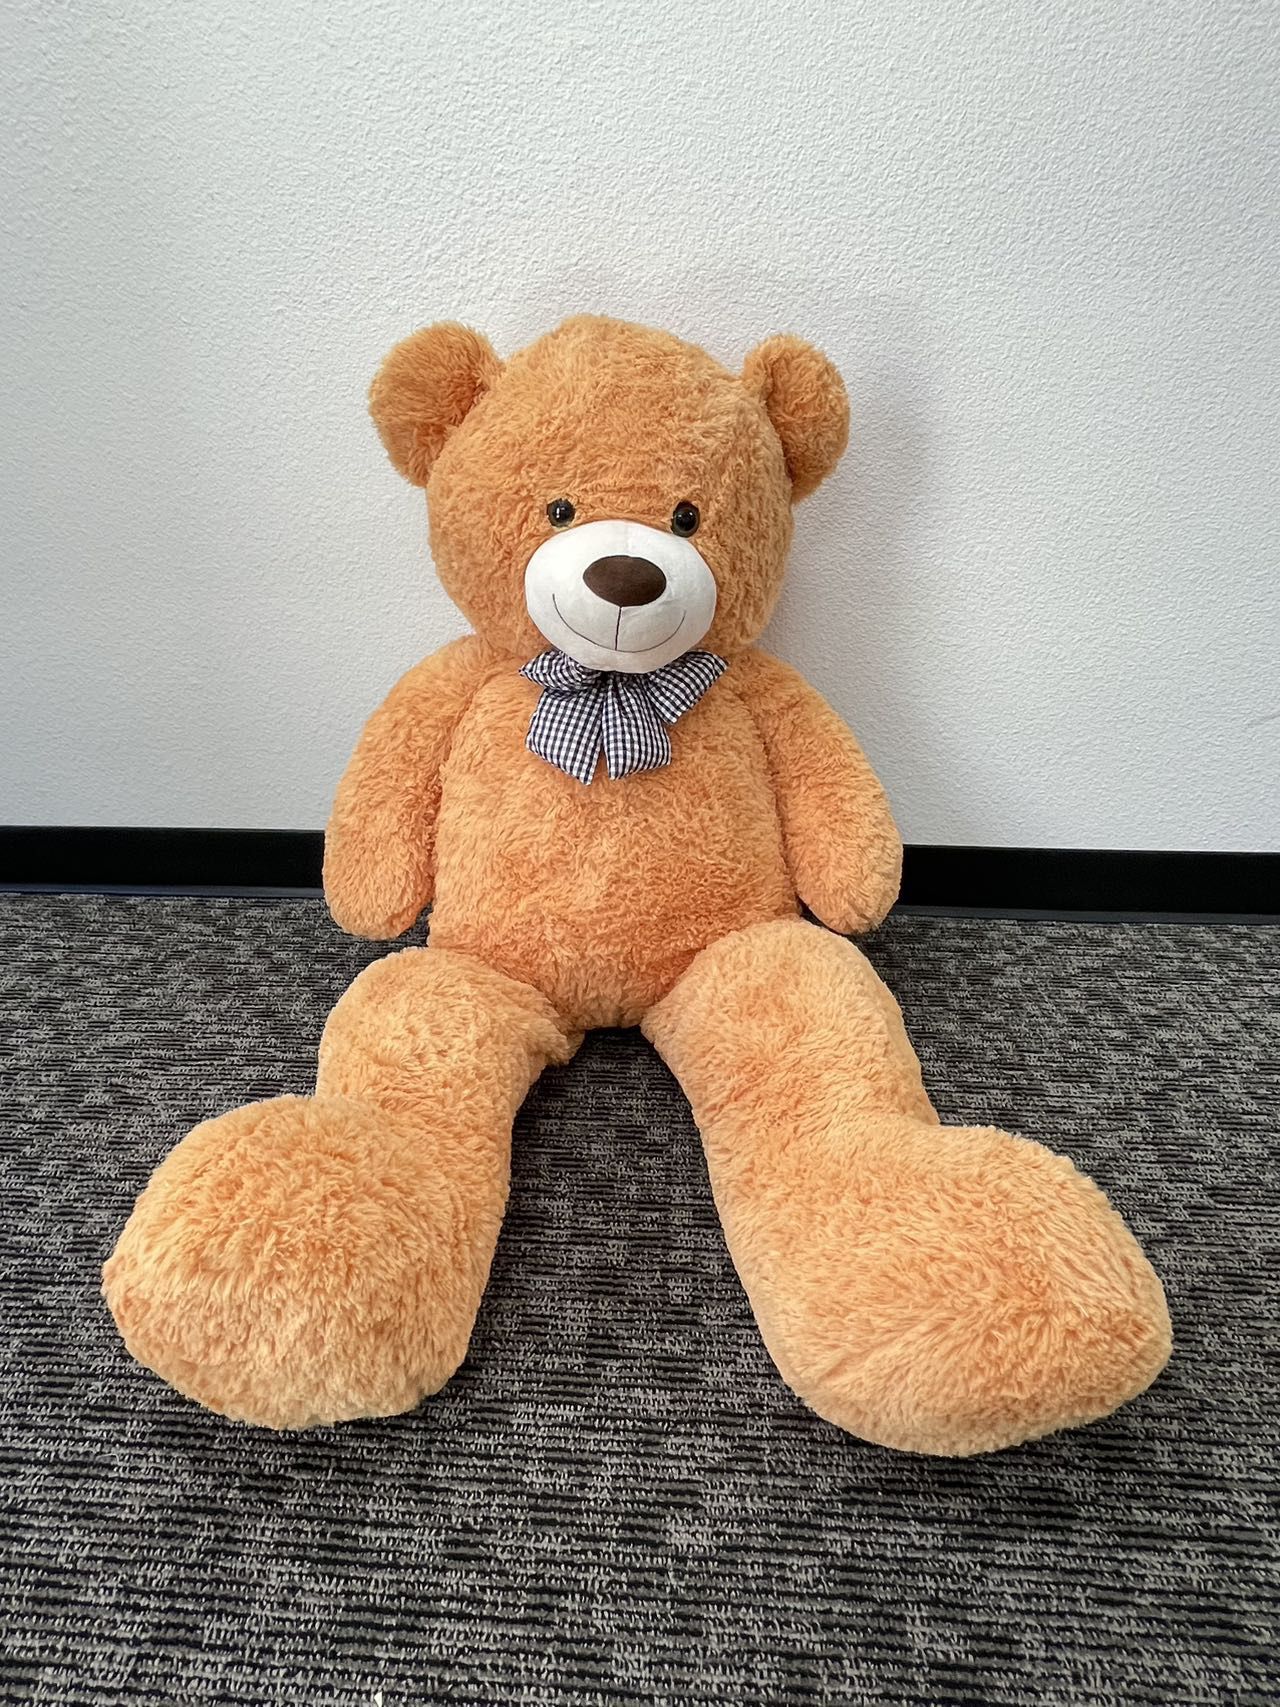 Teddy Bear-55inch